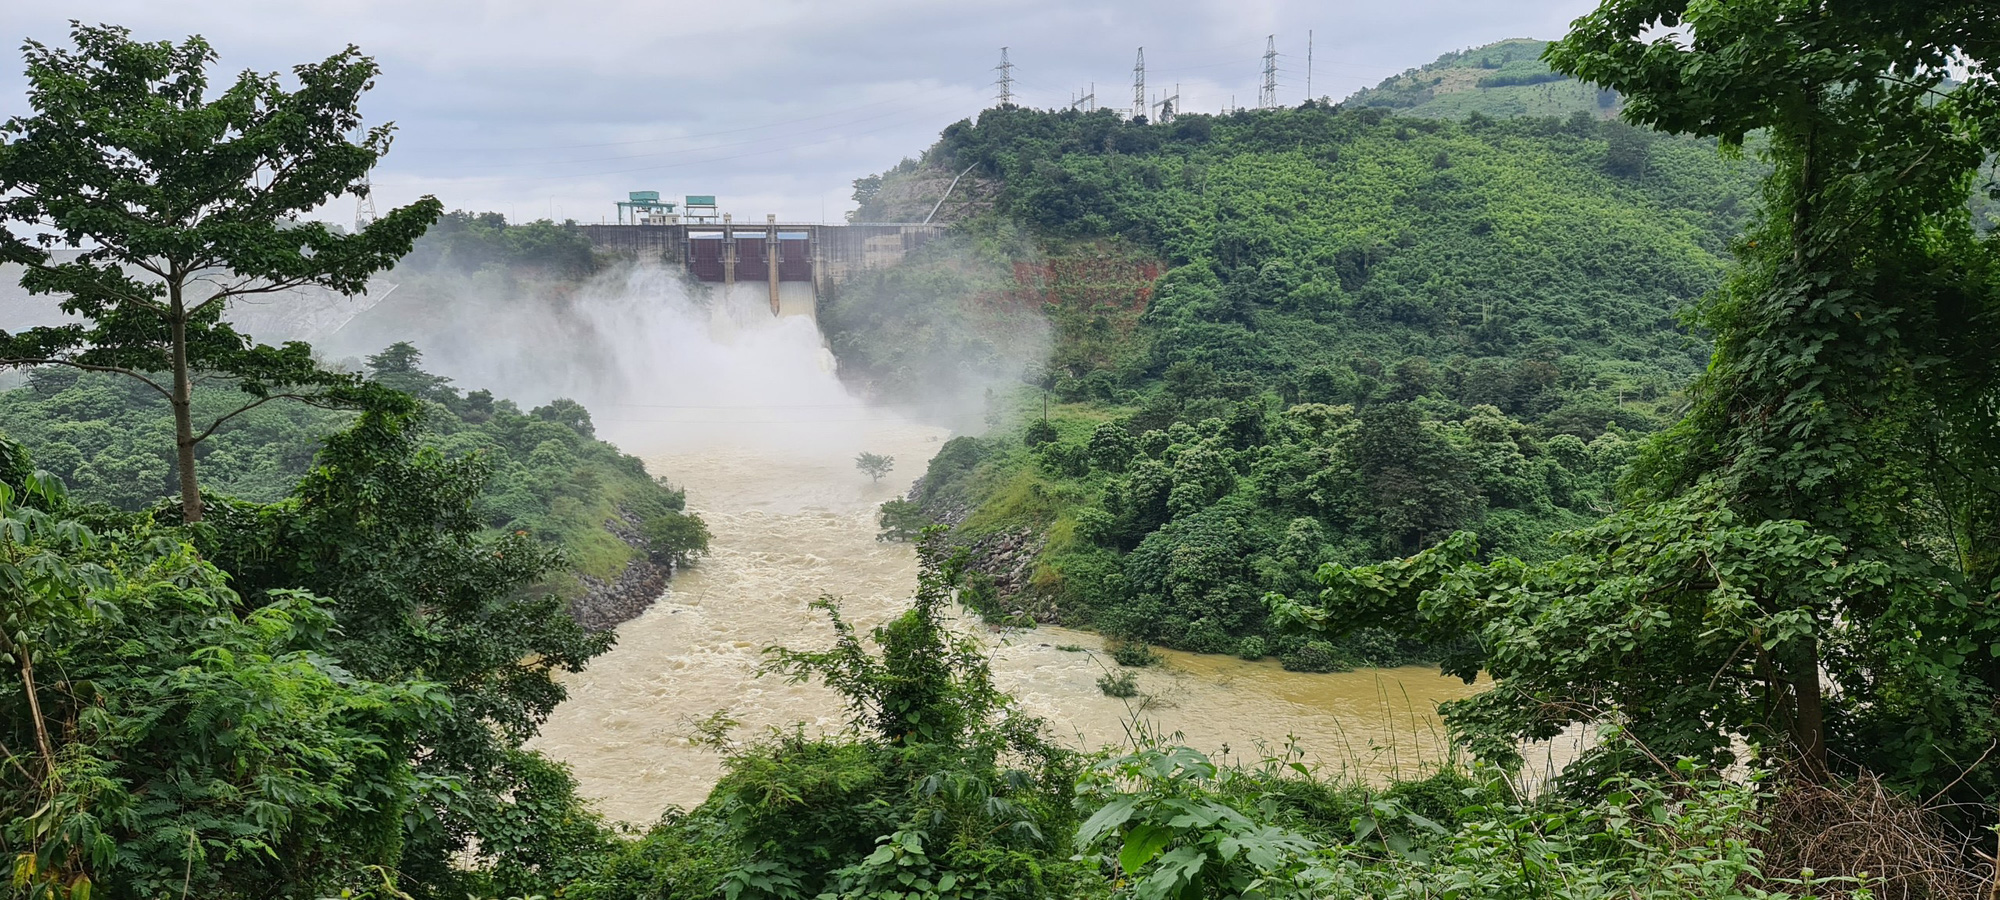 Các thuỷ điện trên sông Srêpốk cảnh báo đang xả lũ với lưu lượng rất lớn về hạ du  - Ảnh 2.